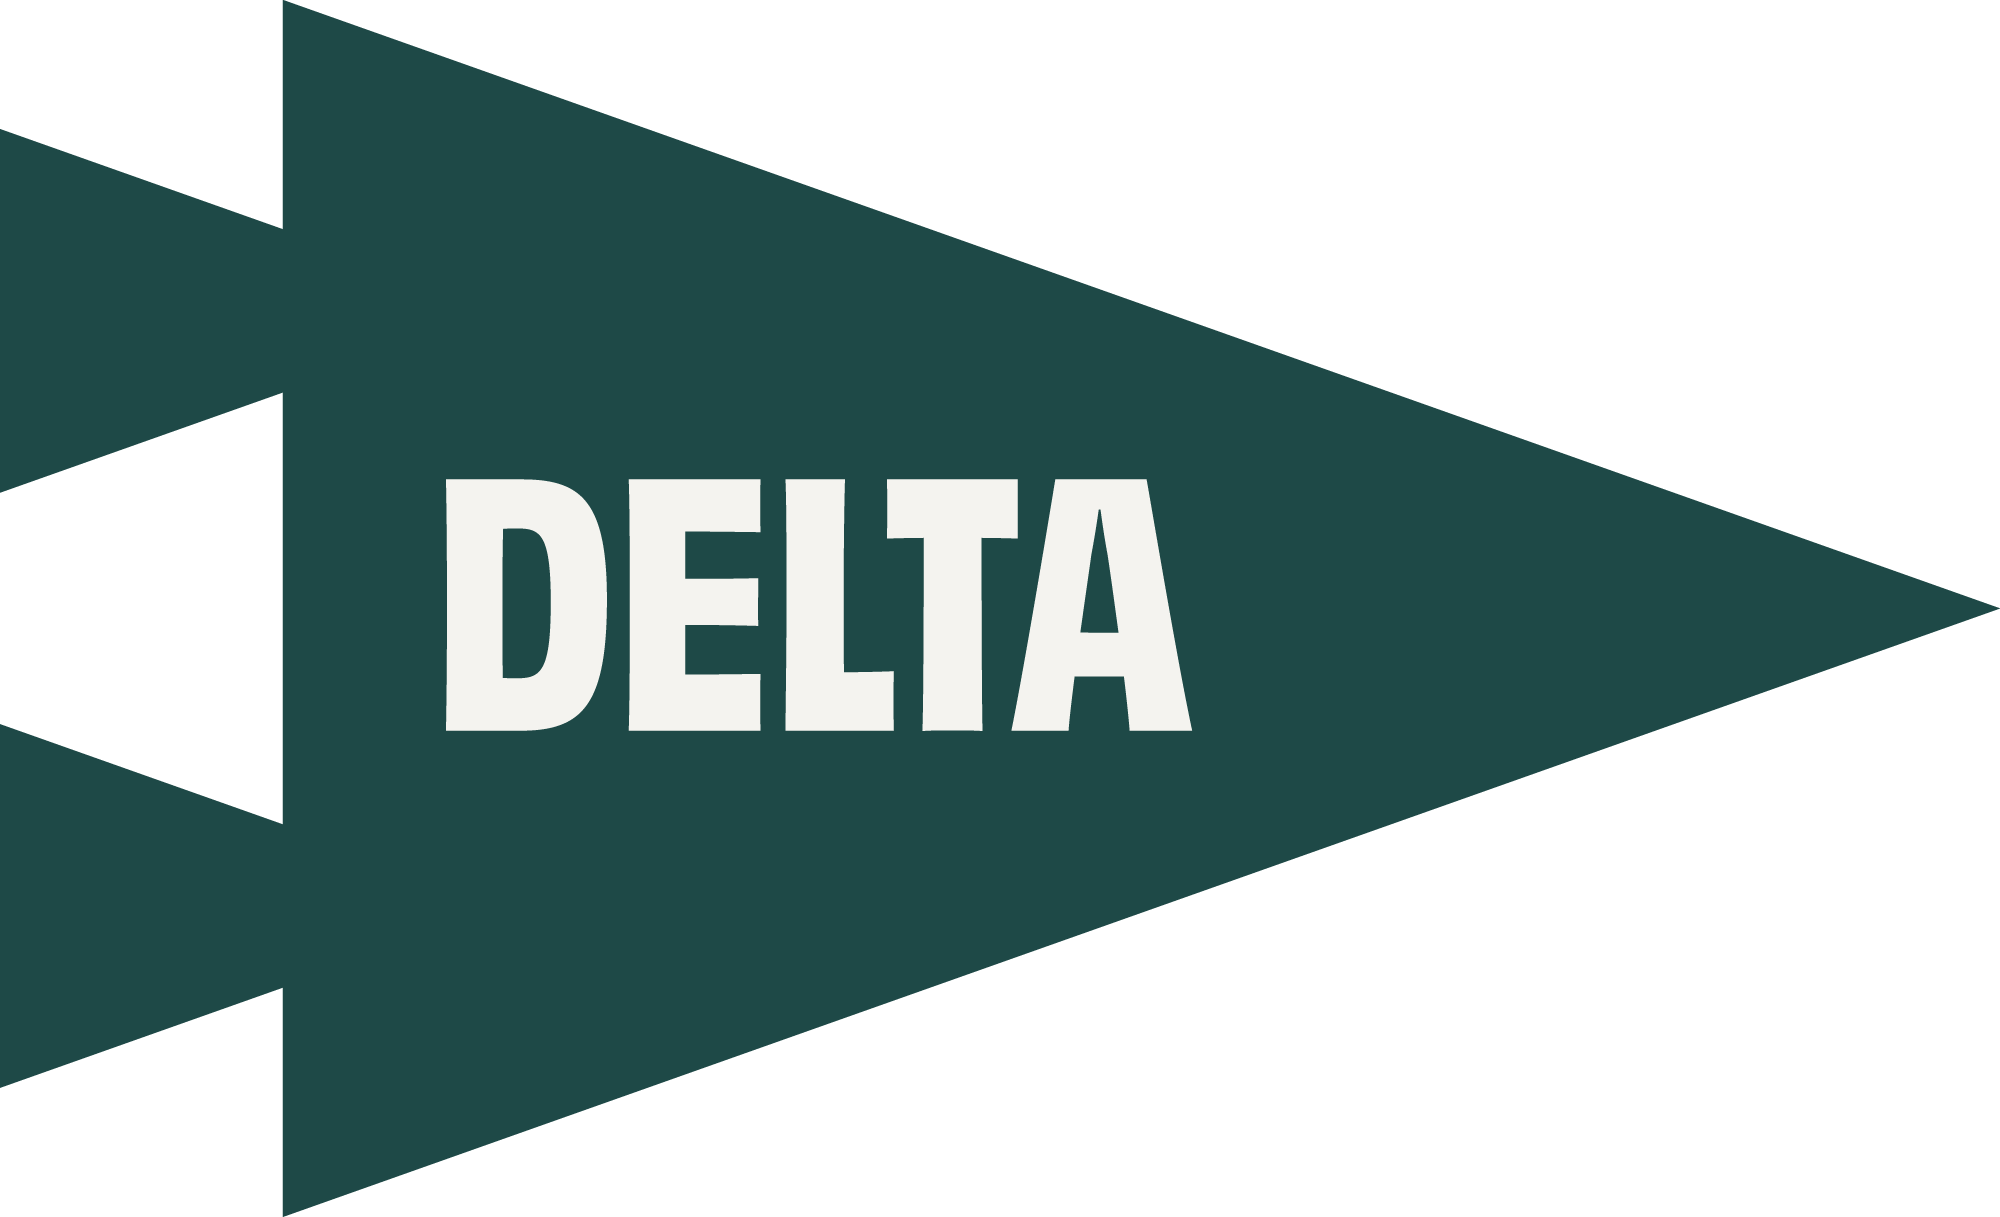 Delta pennant